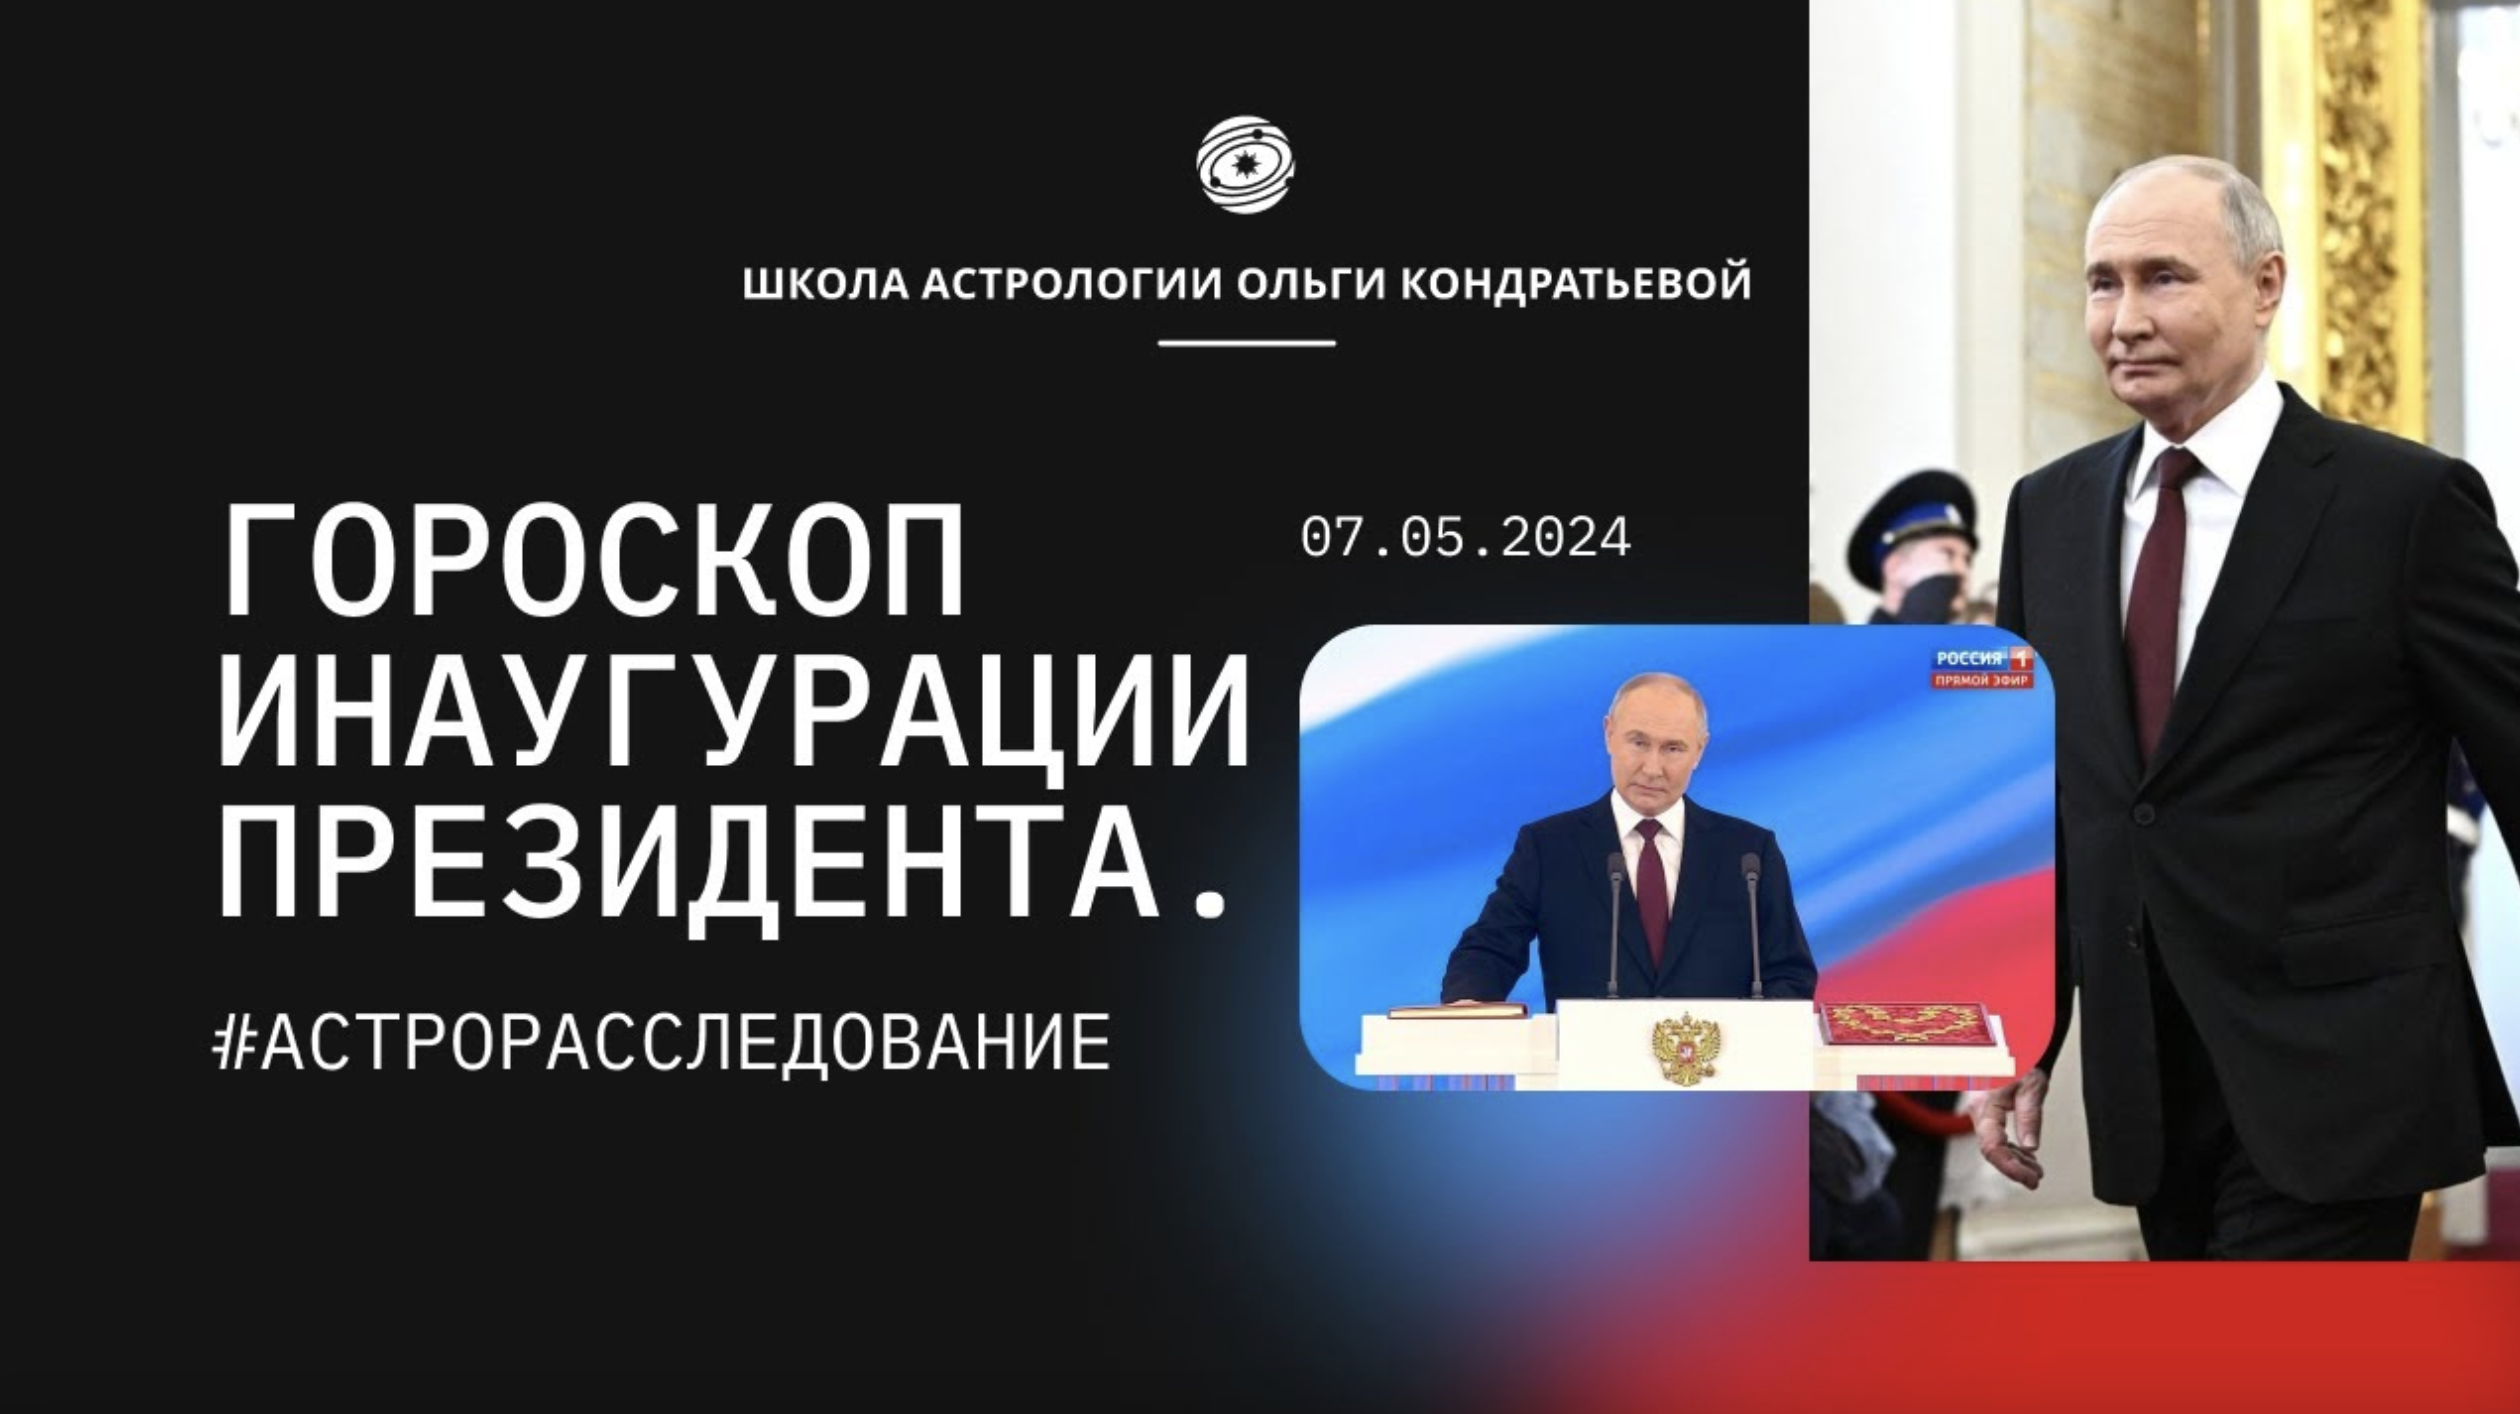 Гороскоп Инаугурации Президента 07.05.24. #астропрогноз #путин #инаугурация #астрология #будущее